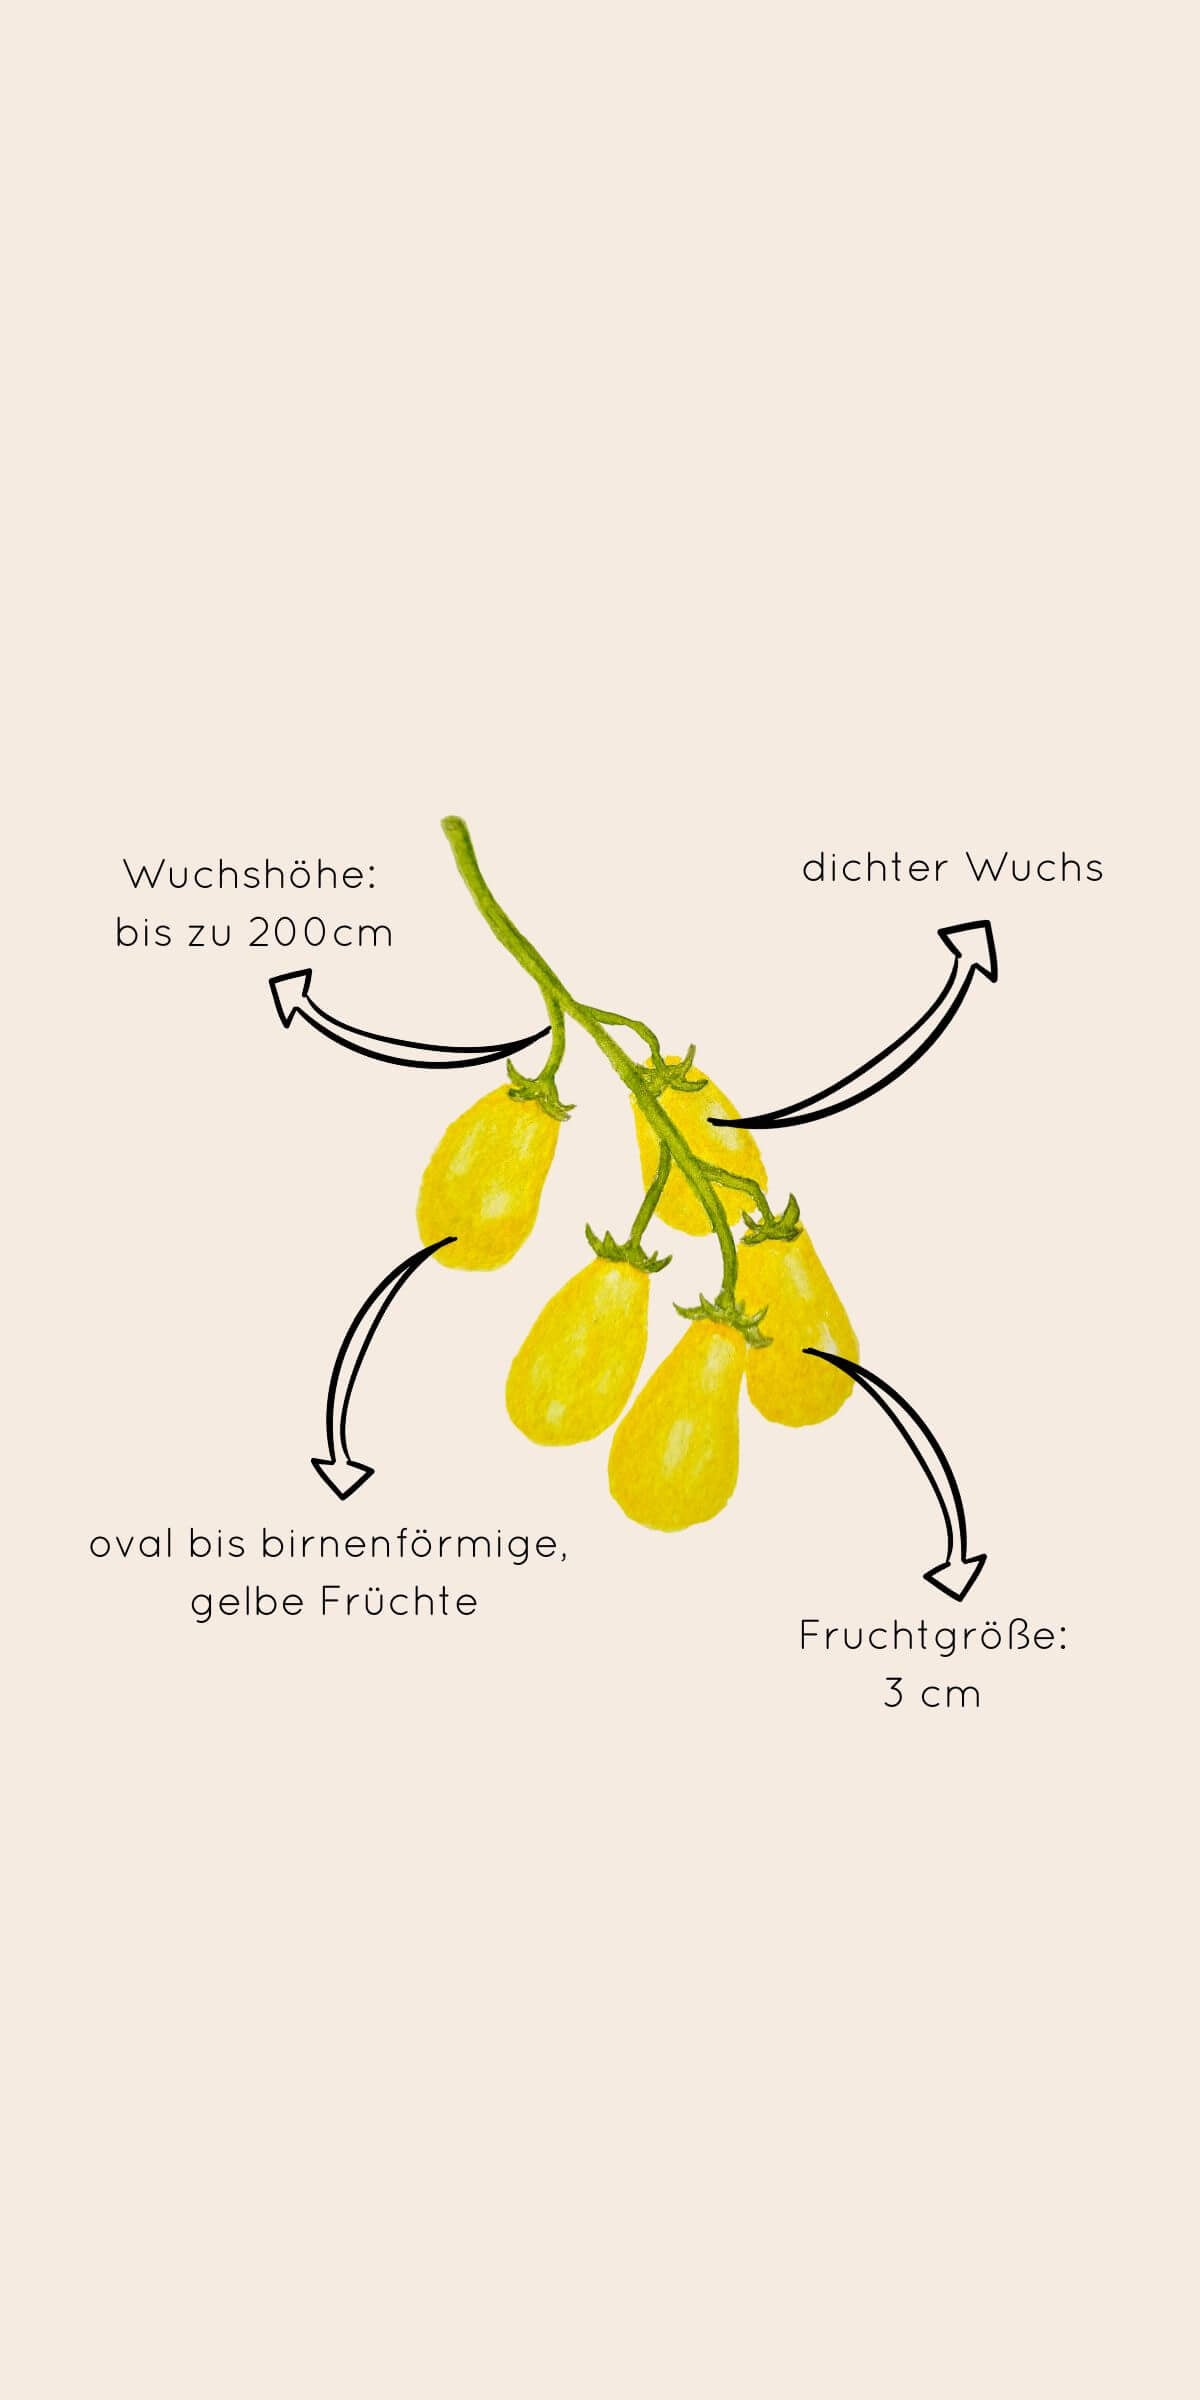 Beschreibung von Aussehen und Wuchsform der gelben Cherrytomate "Dattelwein""